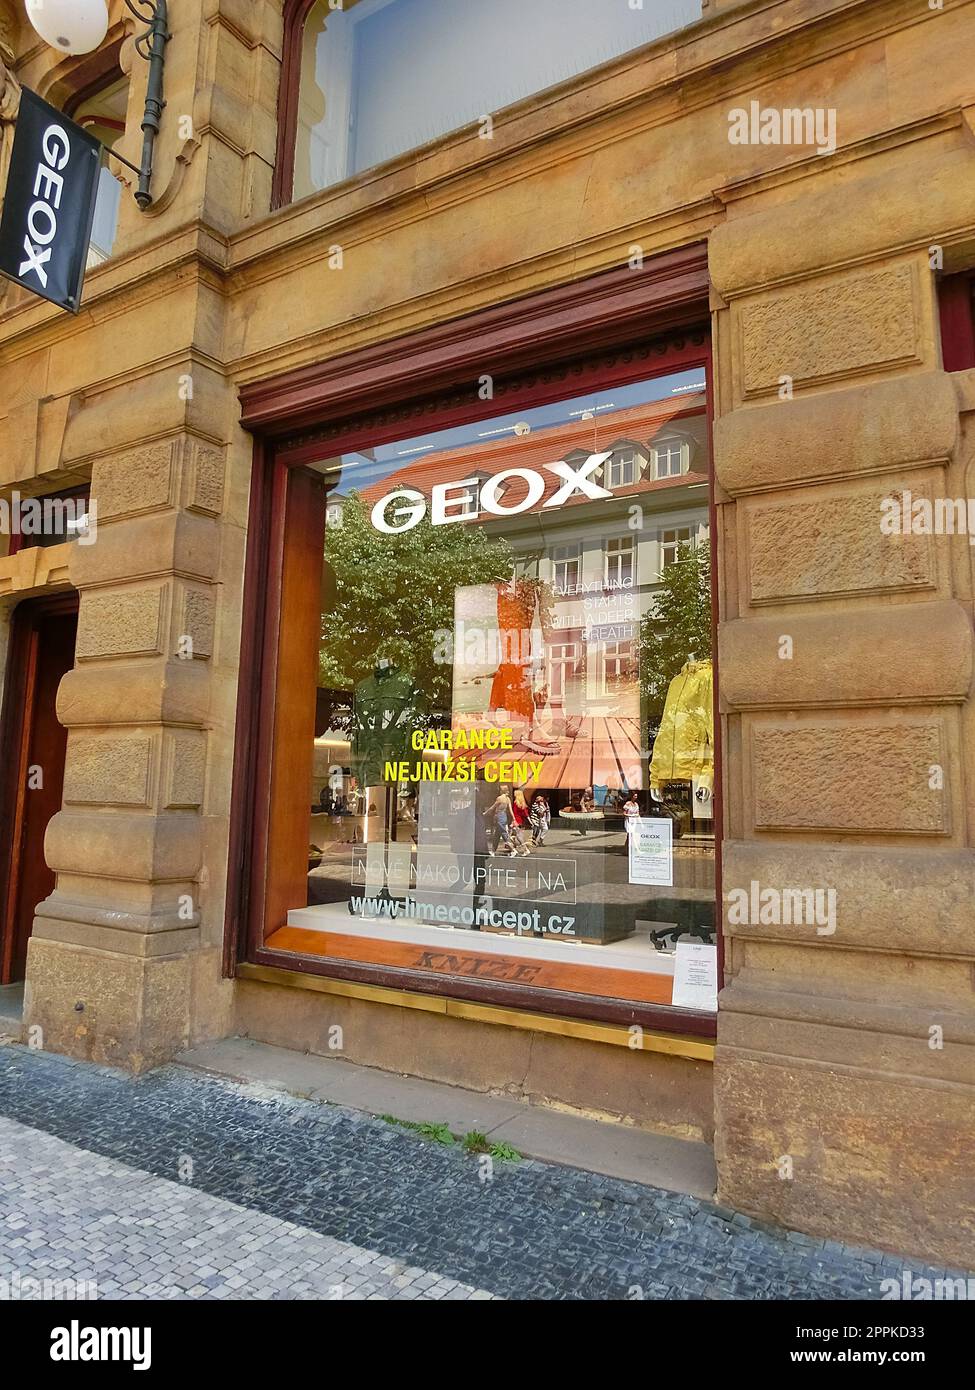 Geox respira e imágenes alta resolución - Alamy